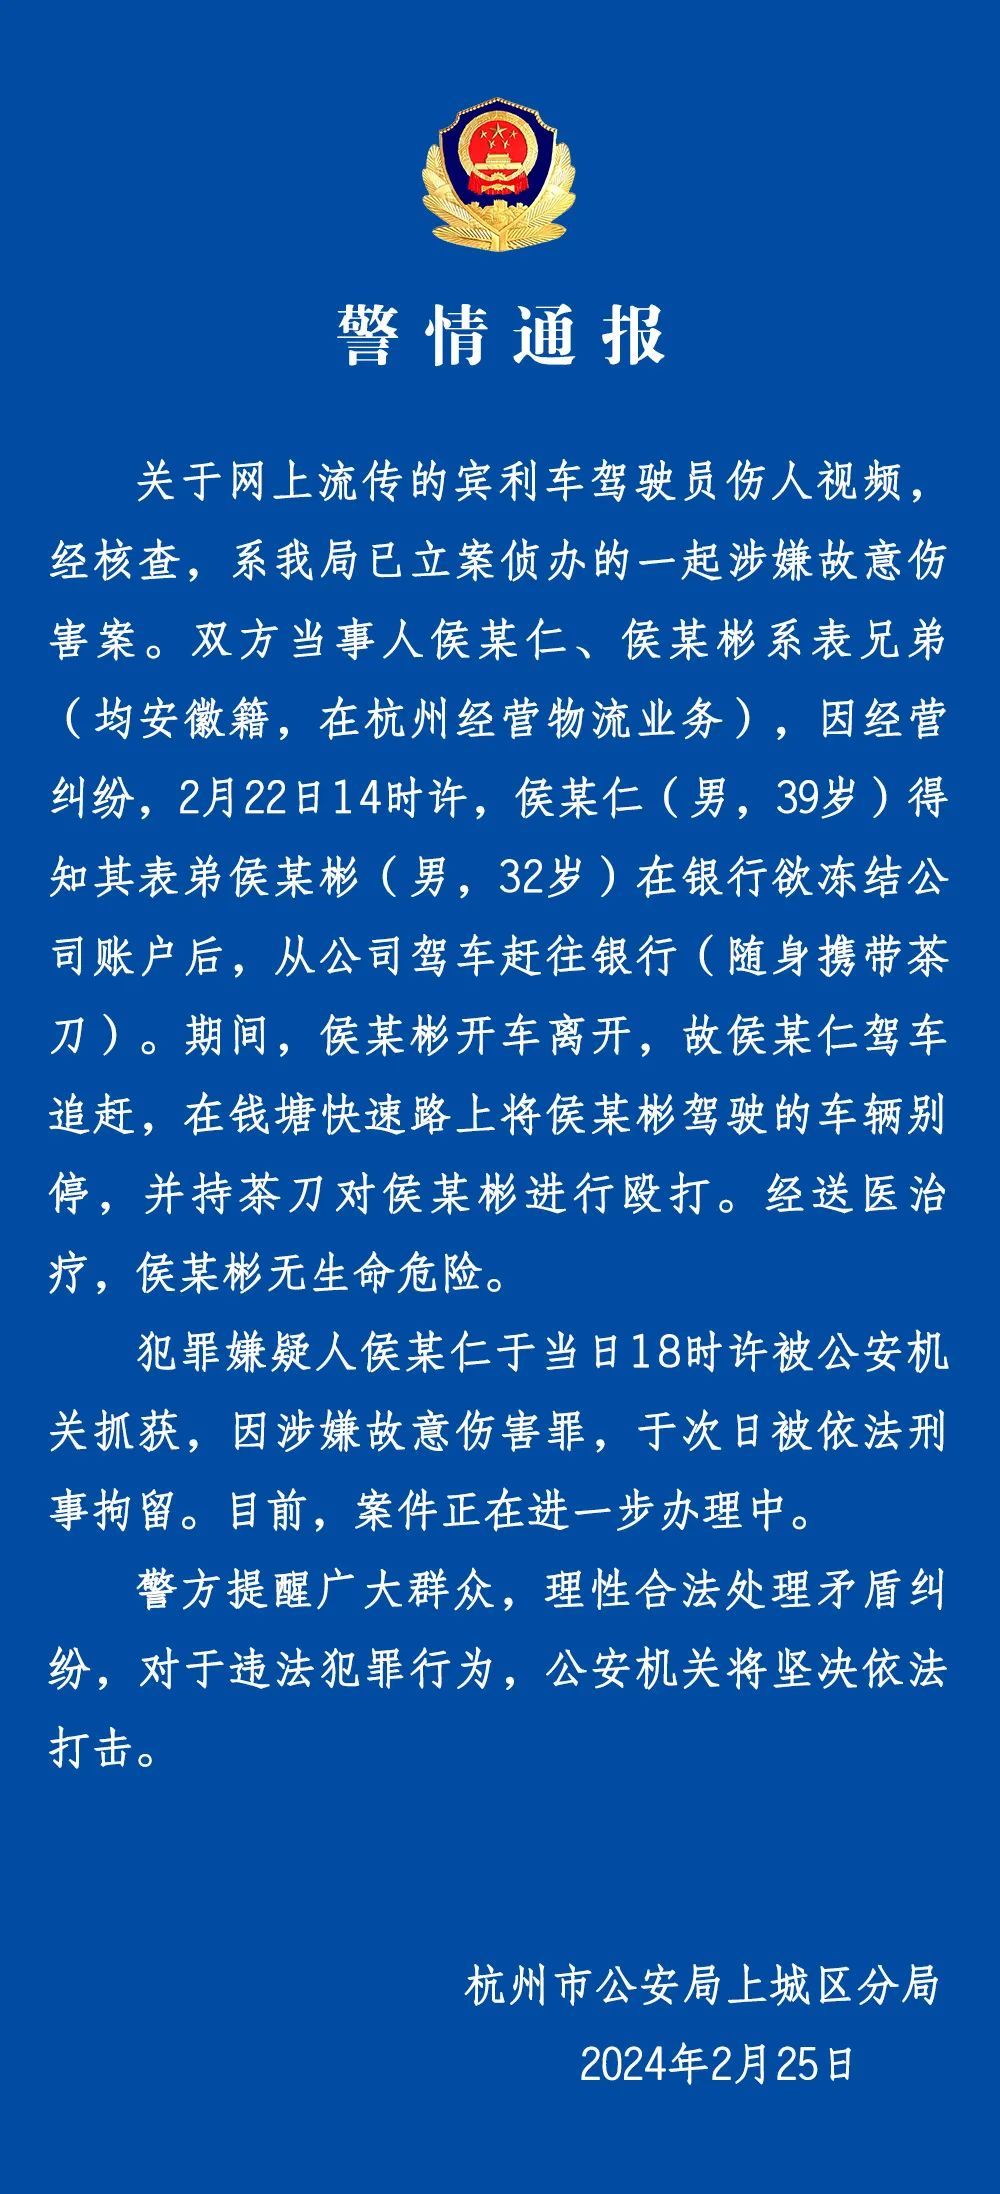 警方通报杭州高架伤人事件：双方有经营纠纷 嫌疑人被刑拘